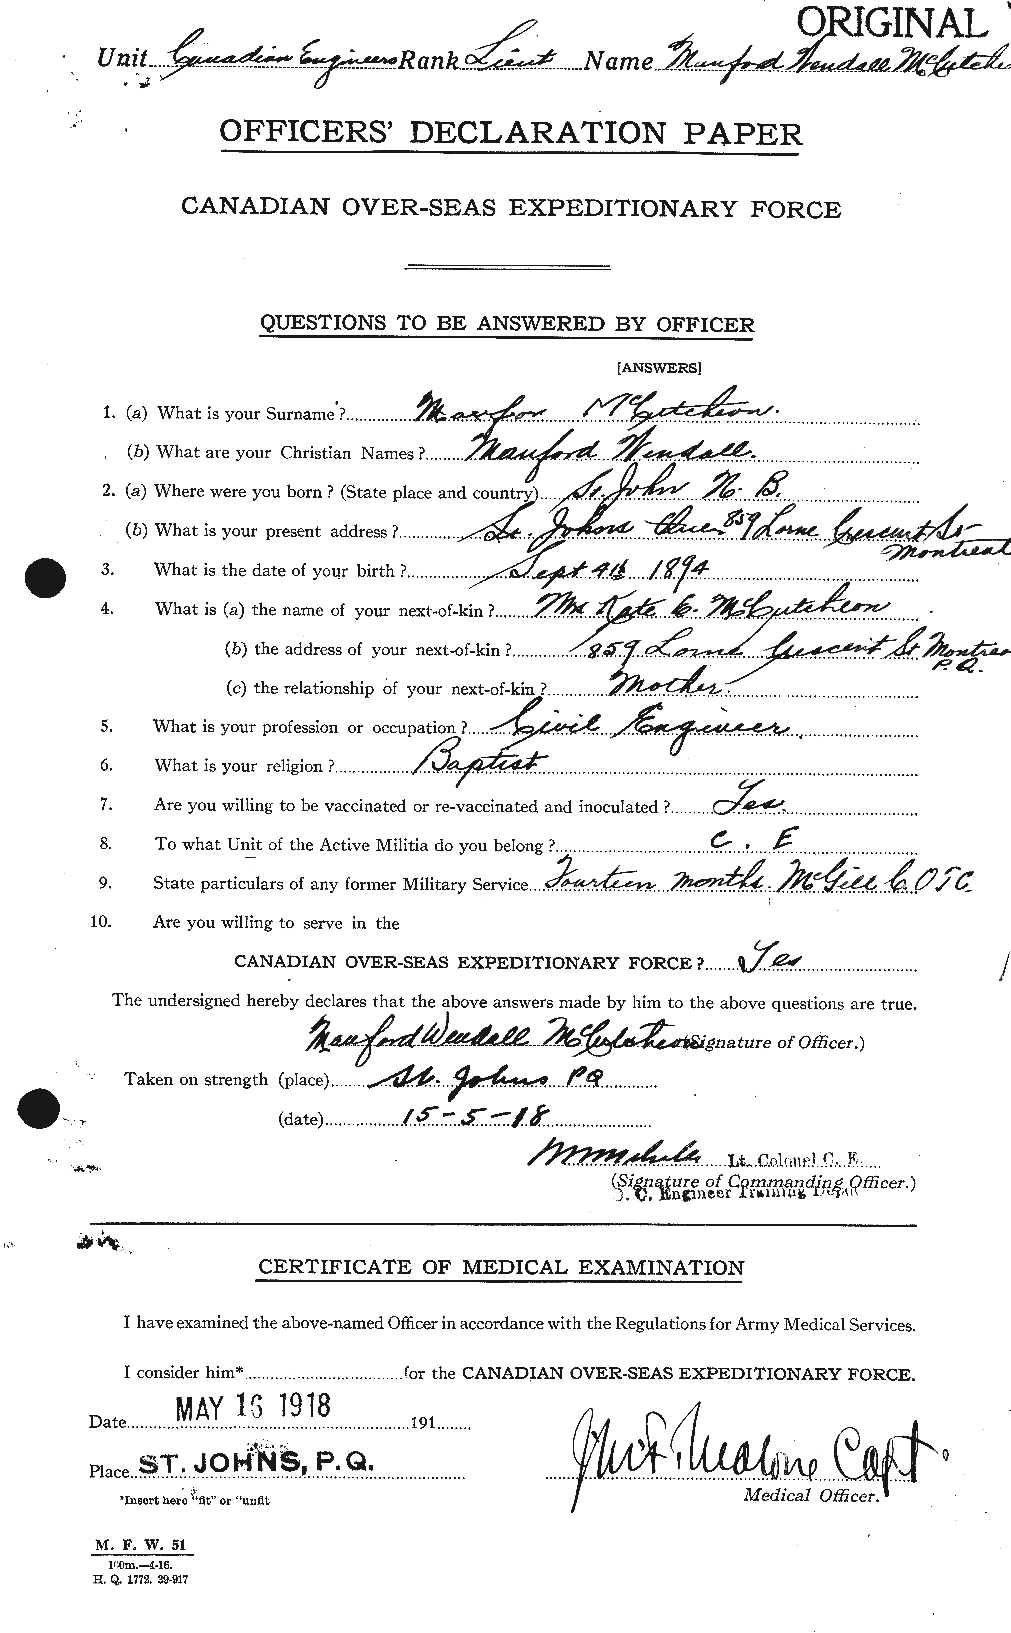 Dossiers du Personnel de la Première Guerre mondiale - CEC 136763a